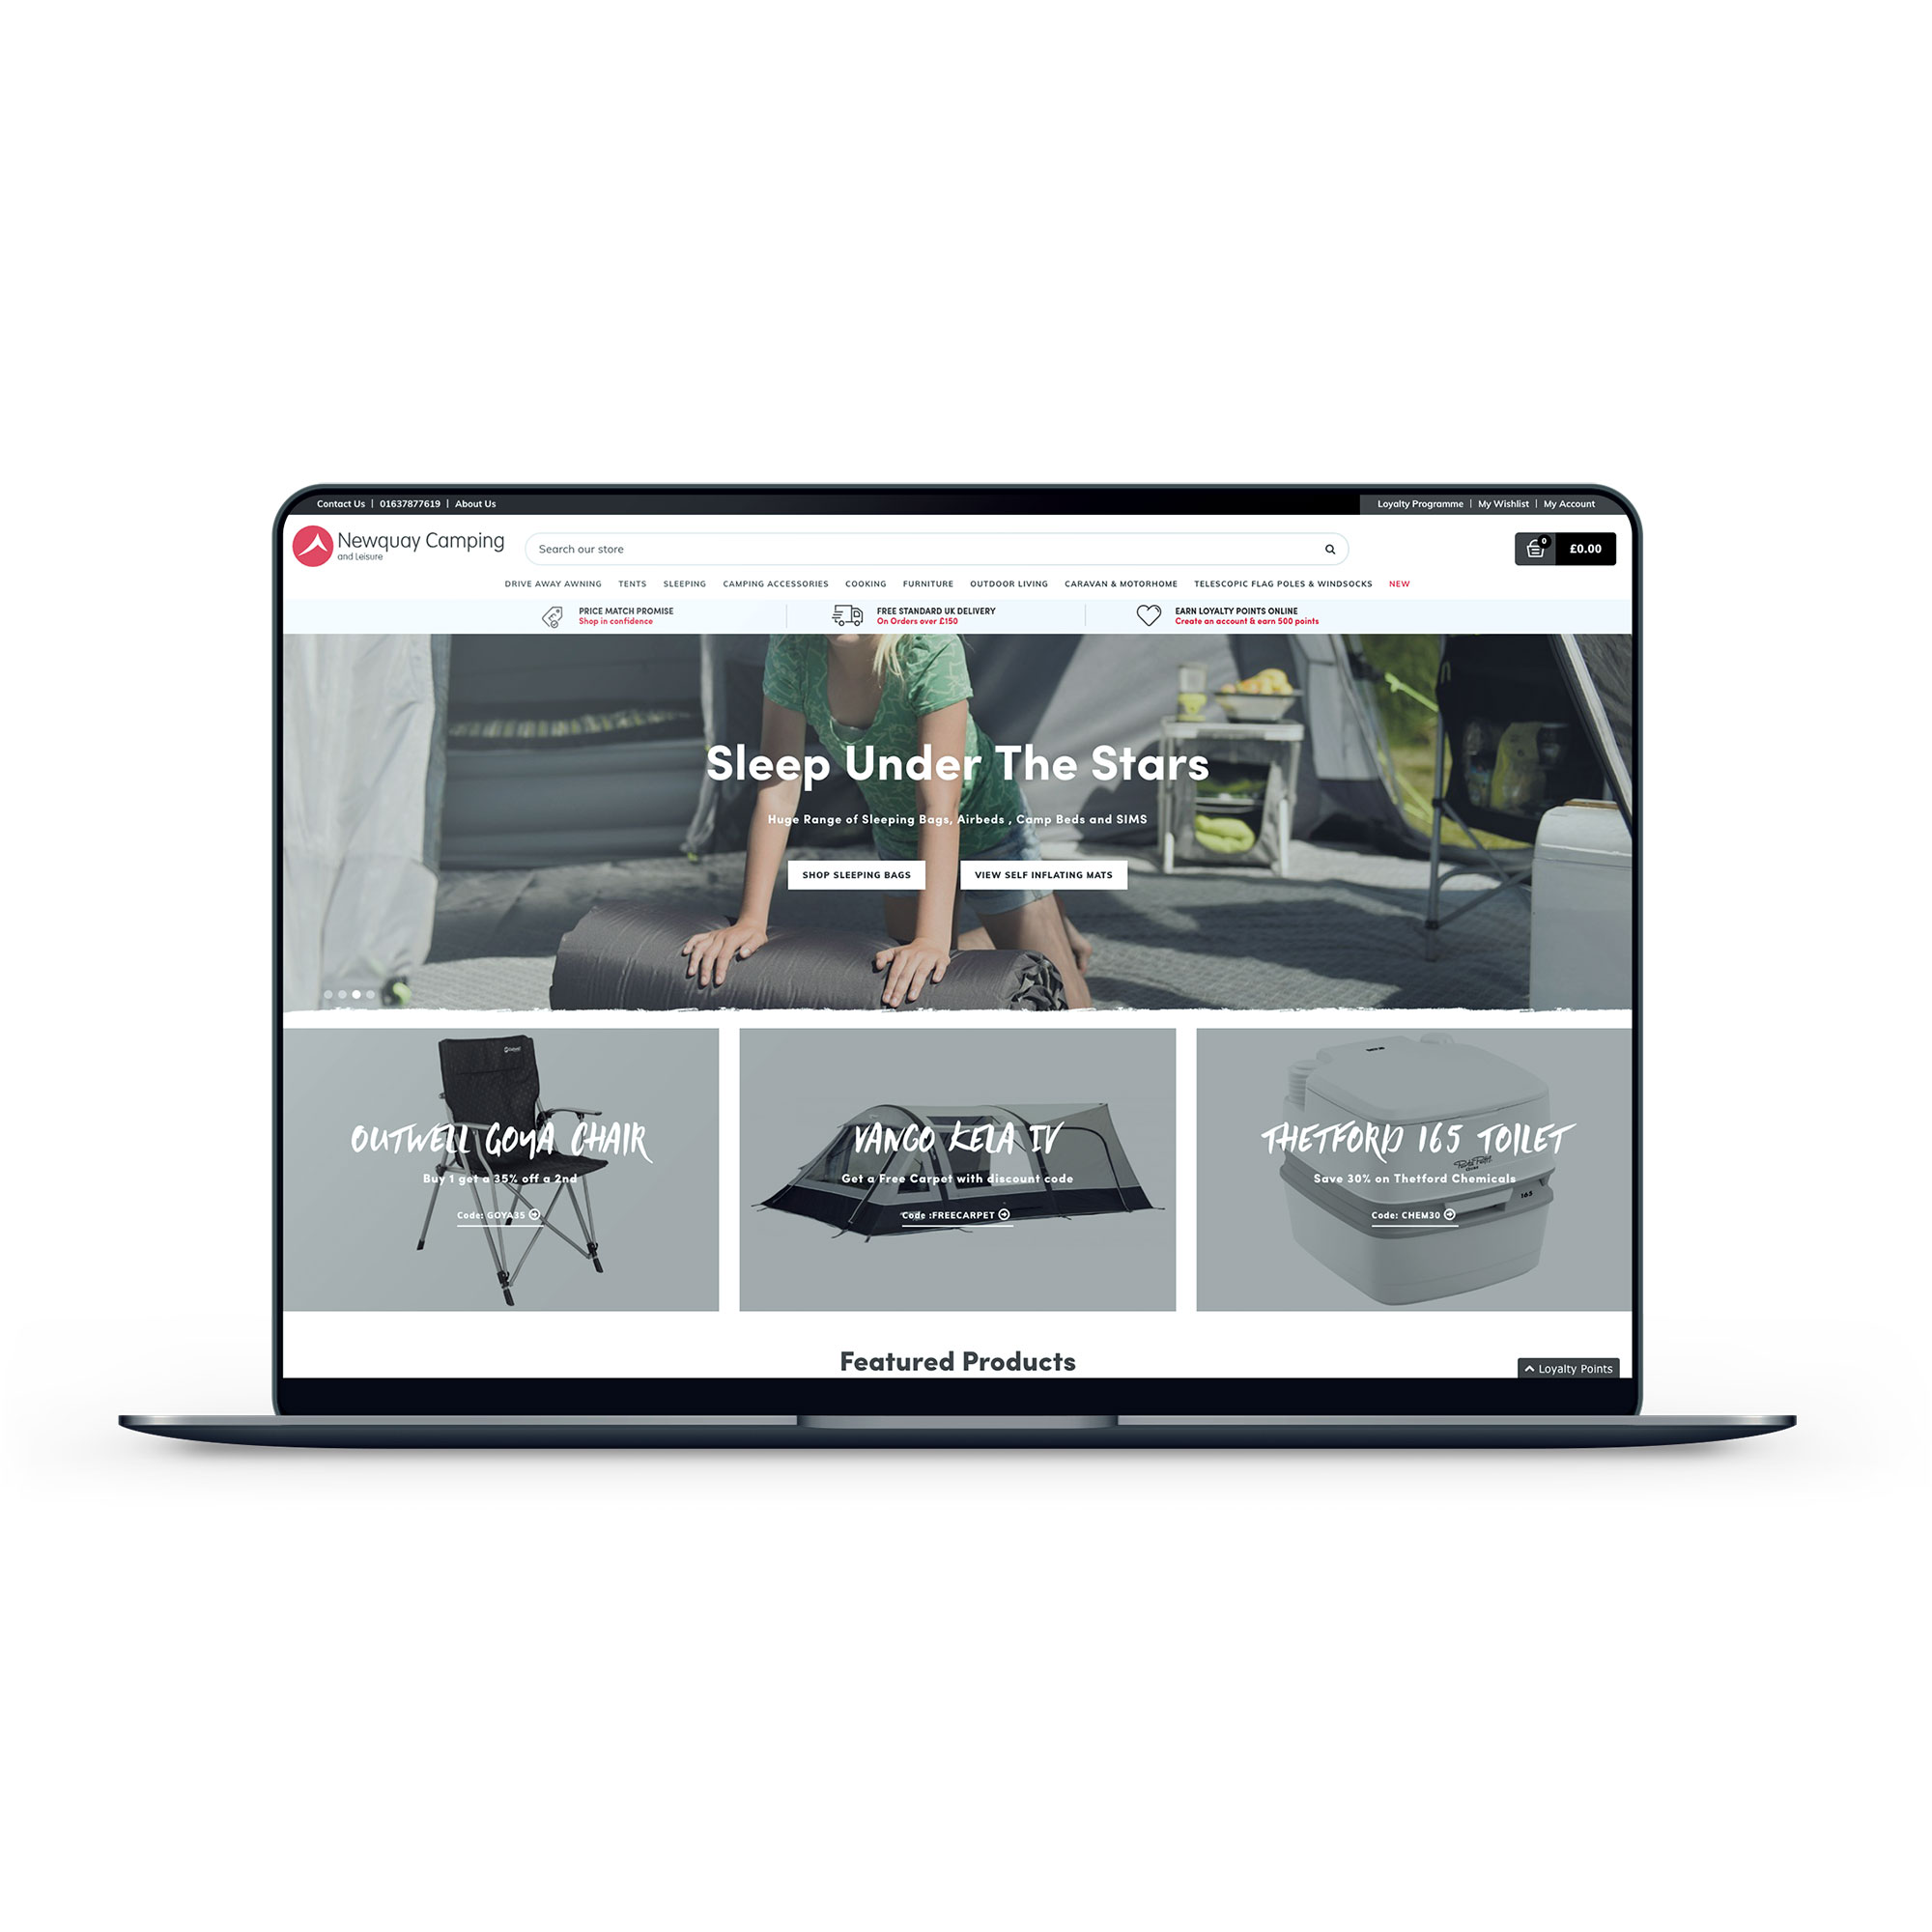 Newquay Camping Shop homepage webdesign portfolio